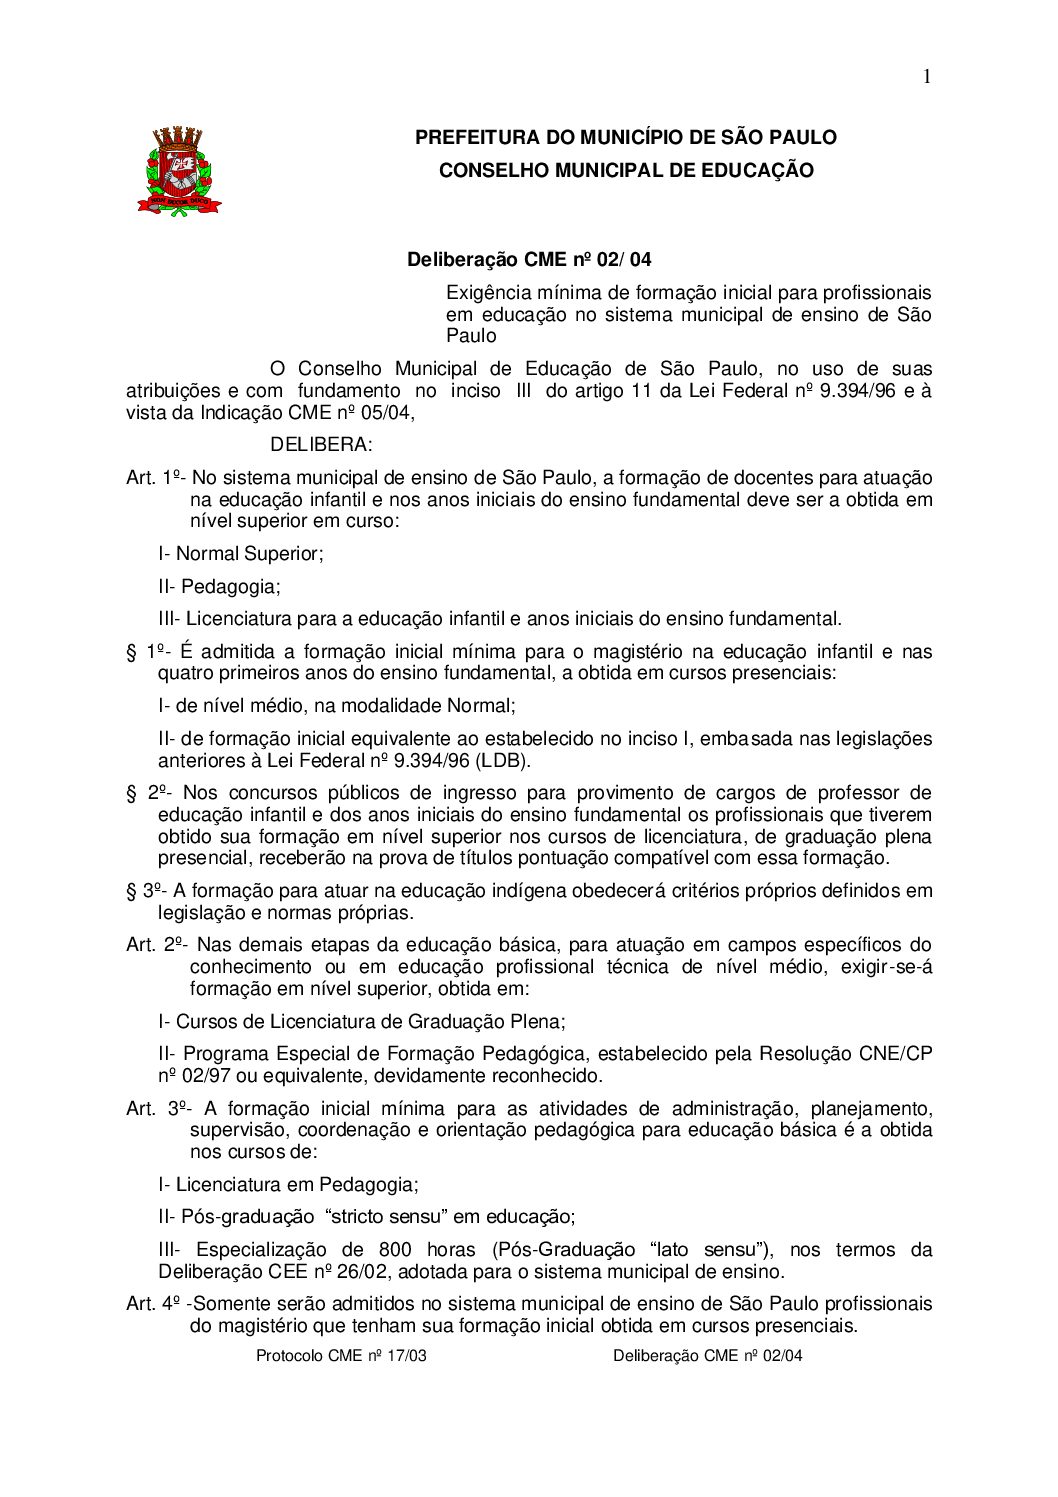 Deliberação CME nº 02/2004 - Exigência mínima de formação inicial para profissionais em educação no sistema municipal de ensino de São Paulo 